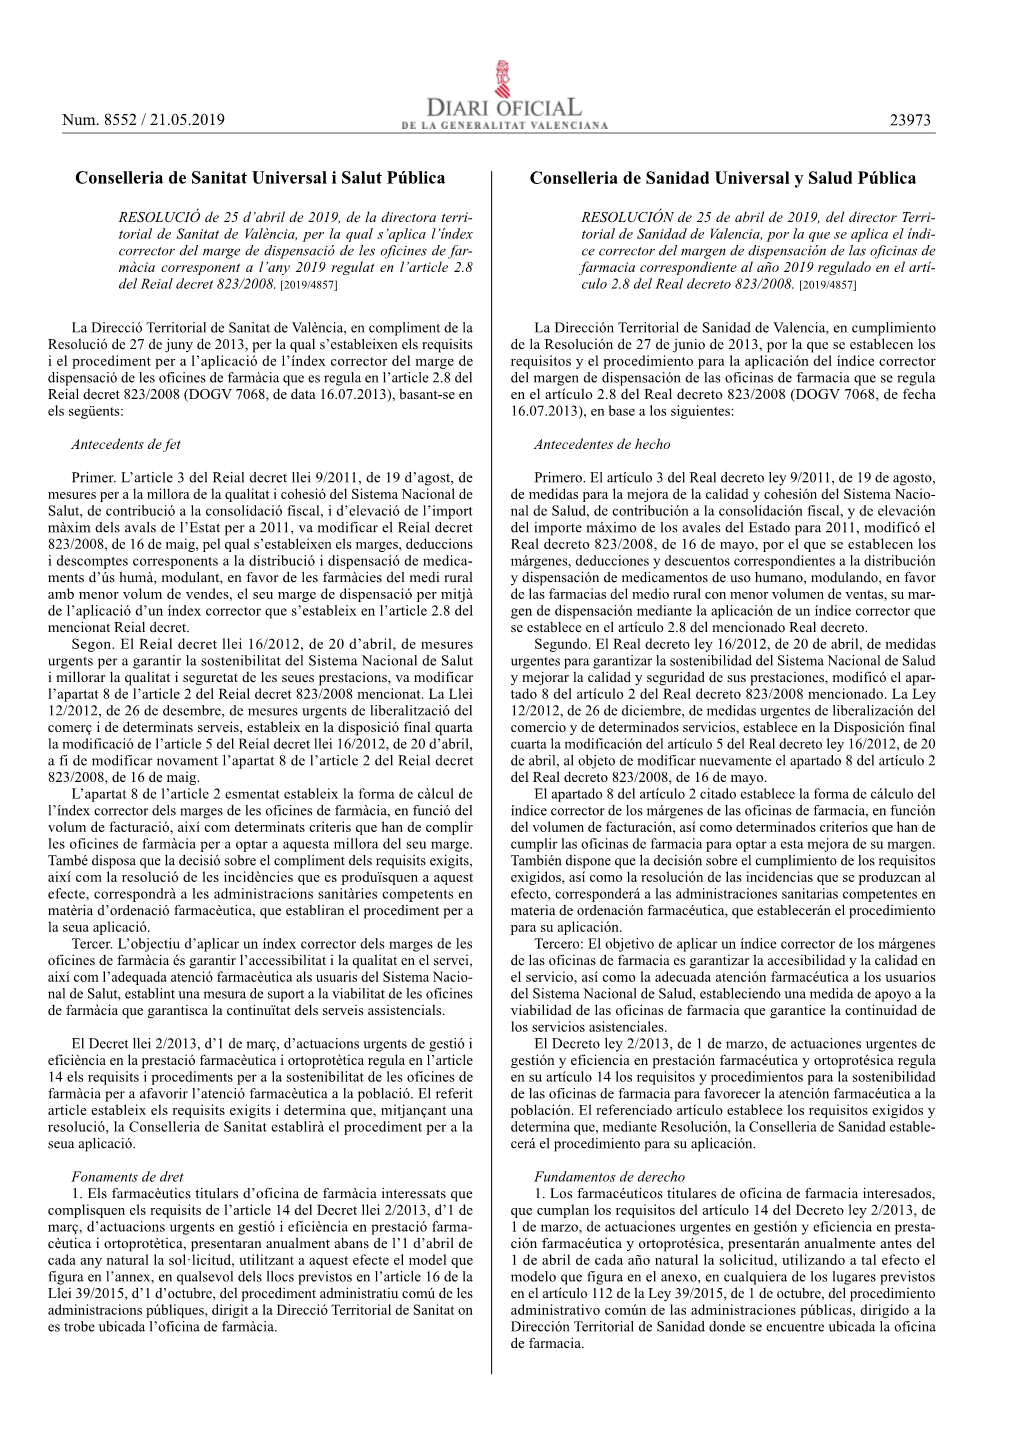 PDF Signat Electrònicament